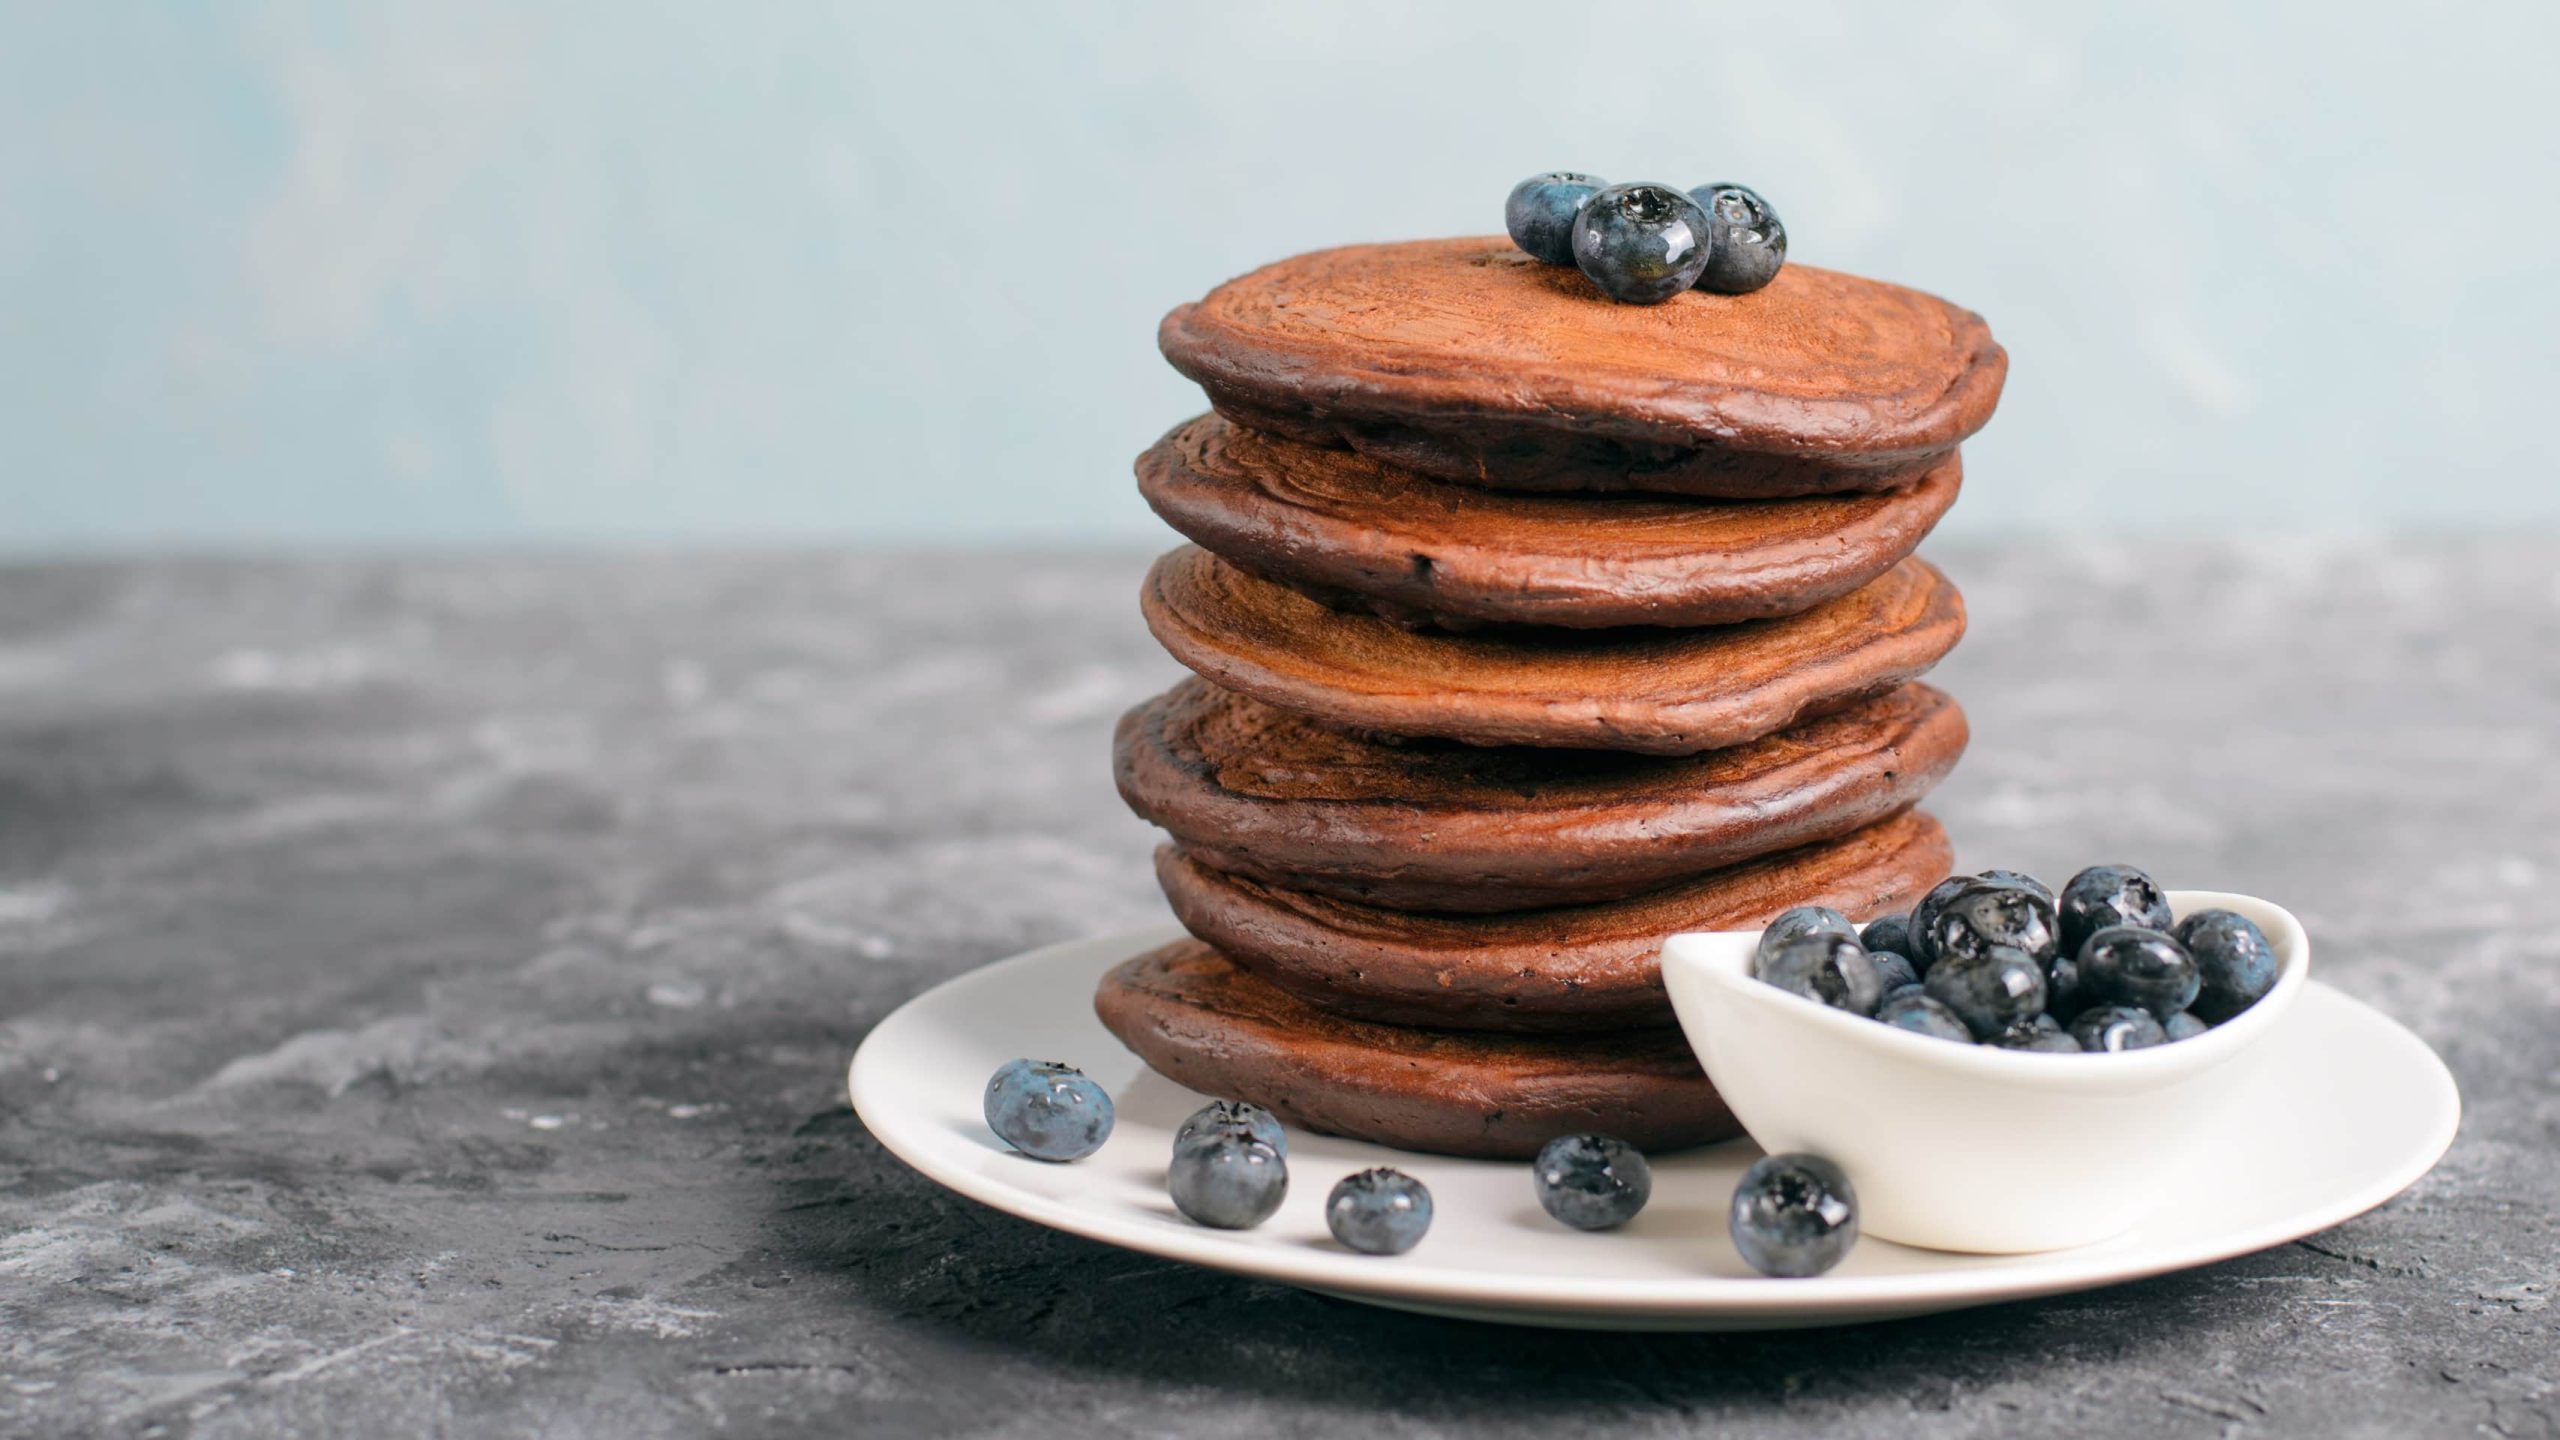 Ein weißer Teller mit den Schokoladen-Pancakes und Blaubeeren auf einem grauen Untergrund.